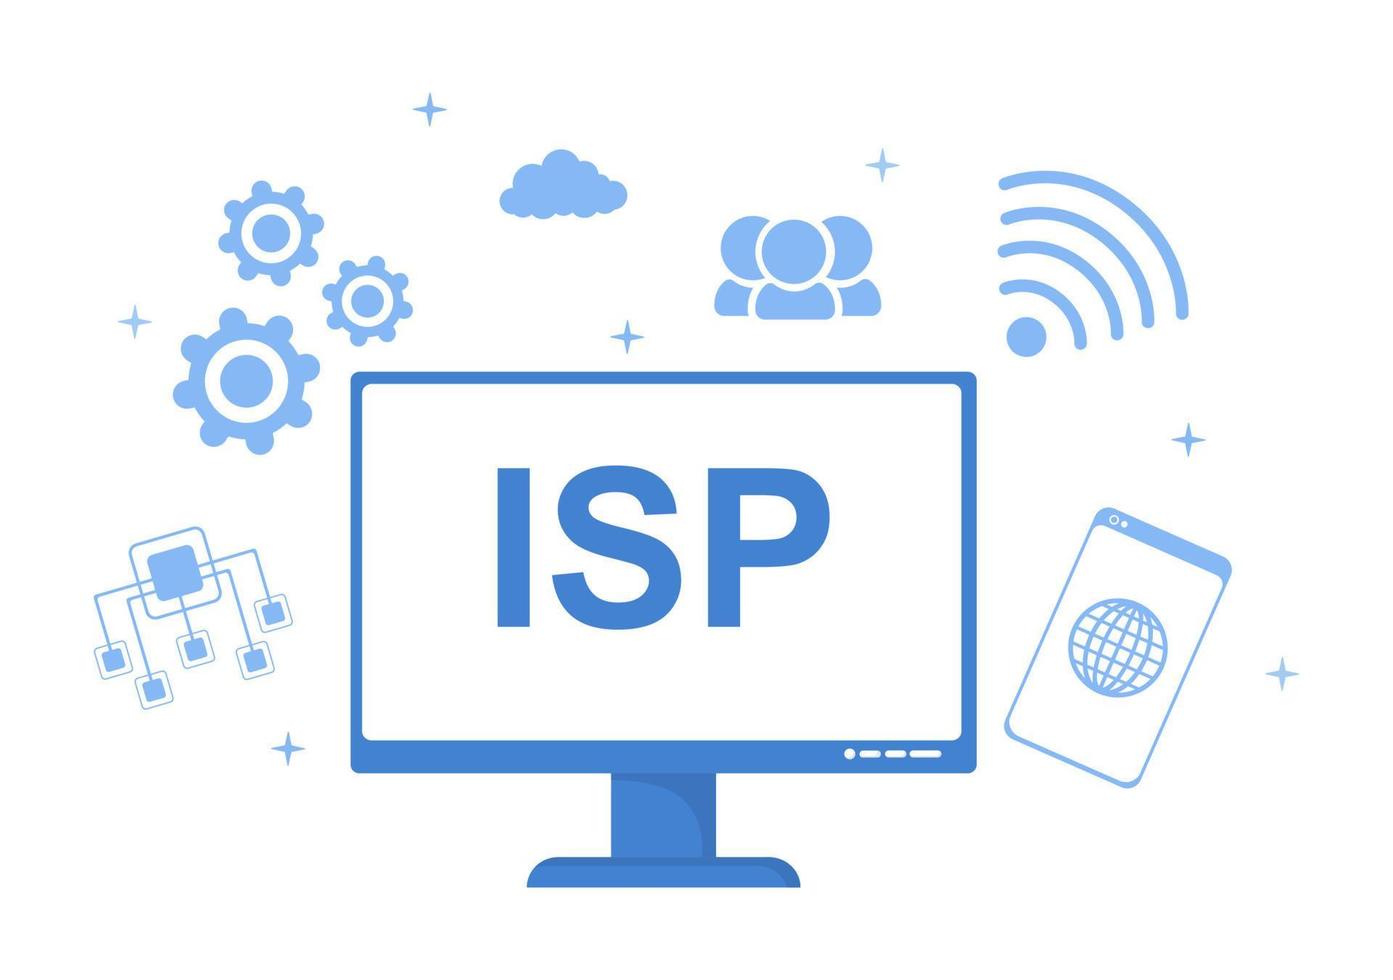 isp o ilustración de dibujos animados del proveedor de servicios de Internet con palabras clave e íconos para acceso a la intranet, conexión de red segura y protección de la privacidad vector